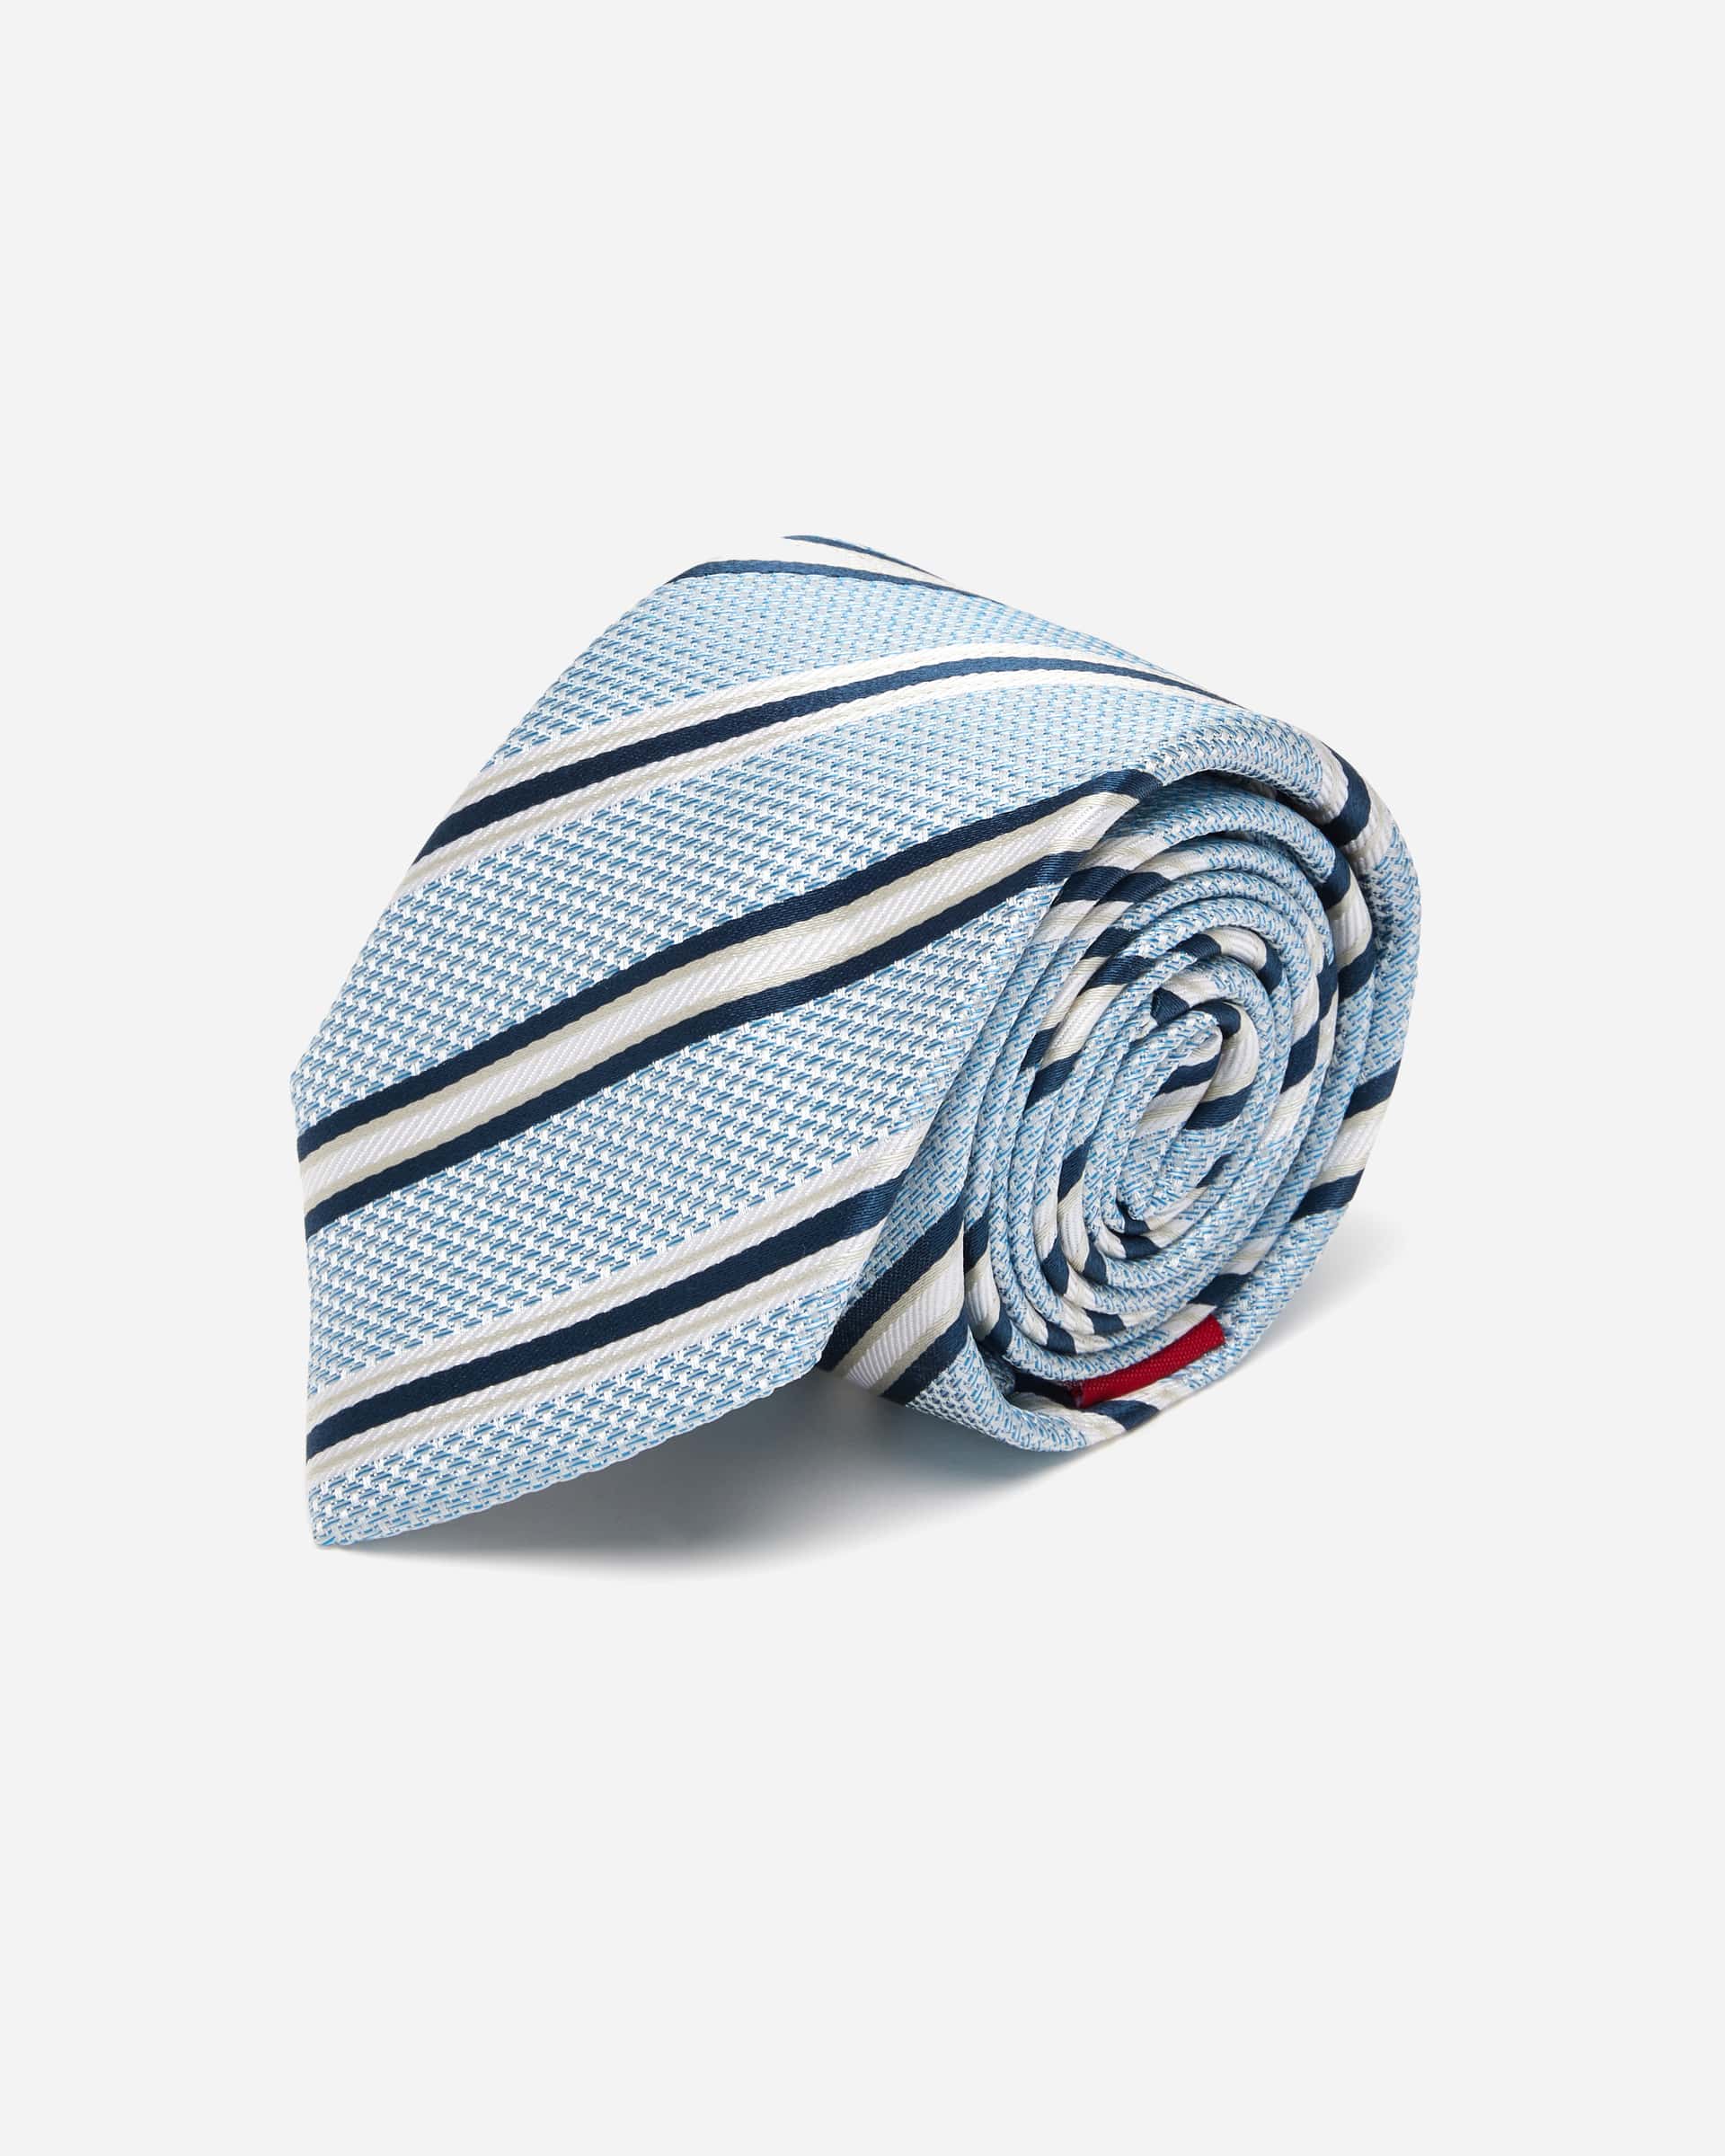 Baby Blue Stripe Silk Tie - Men's Ties at Menzclub